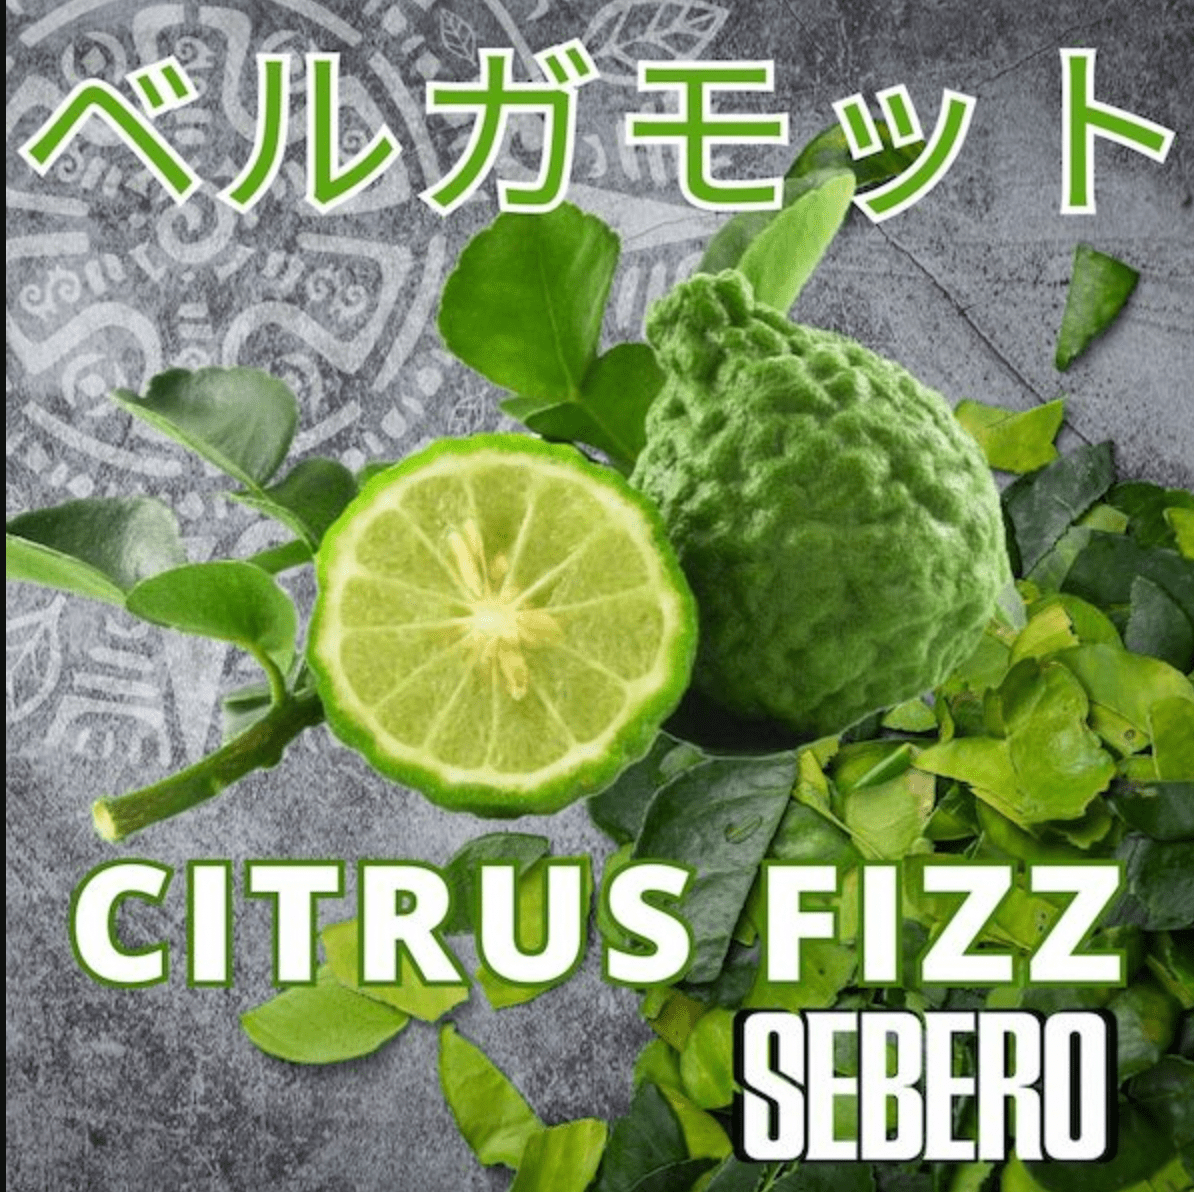 BERGAMOT (citrus fizz) - 日本最大級のシーシャ・水タバコの通販サイト| ブクブクSHOP